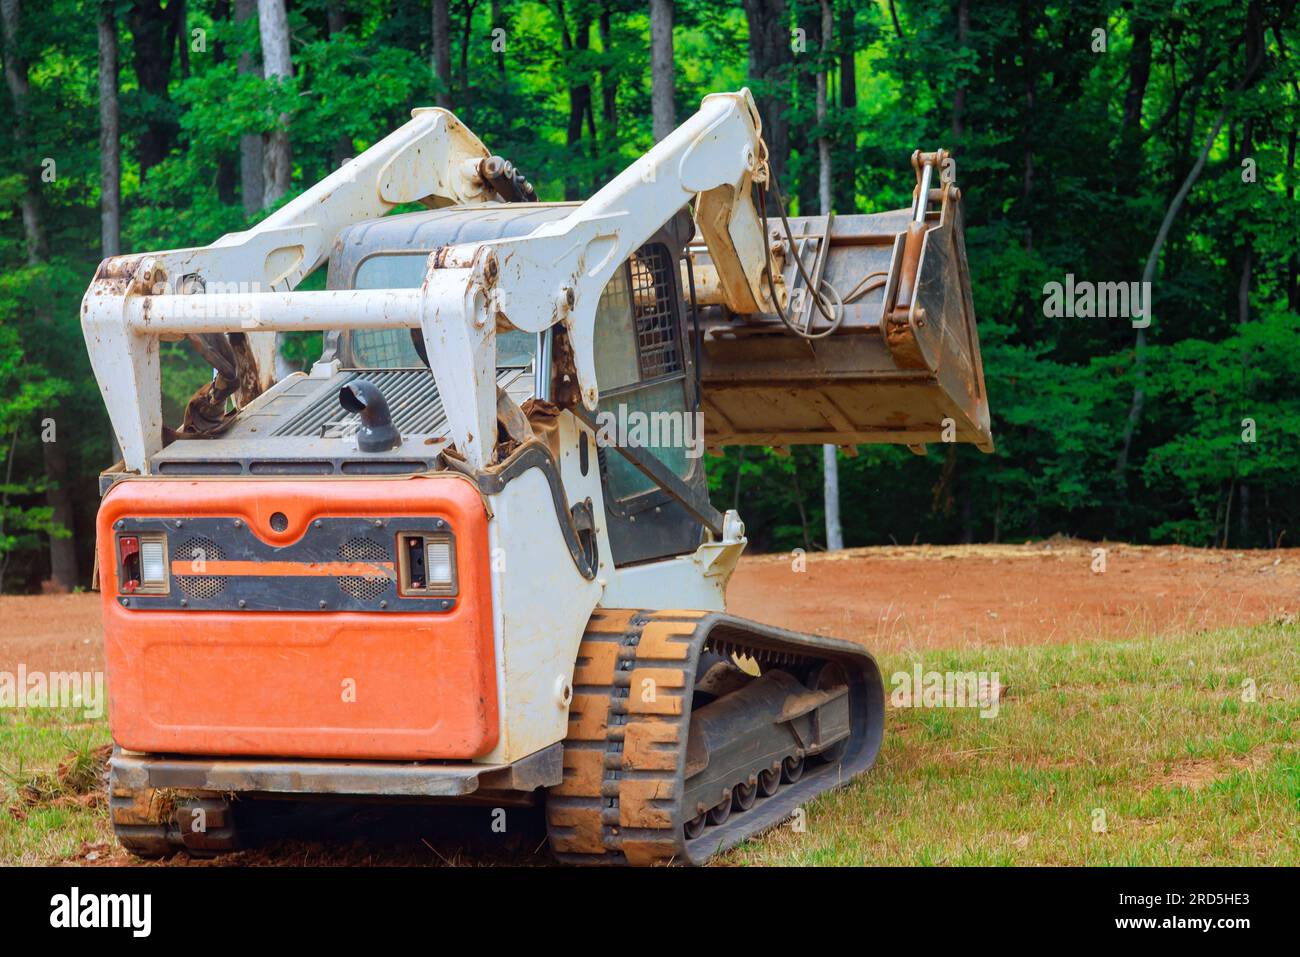 L'utilizzo di mini bulldozer in lavori di architettura paesaggistica comporta un trasferimento preciso del suolo, garantendo una trasformazione del territorio ben realizzata. Foto Stock